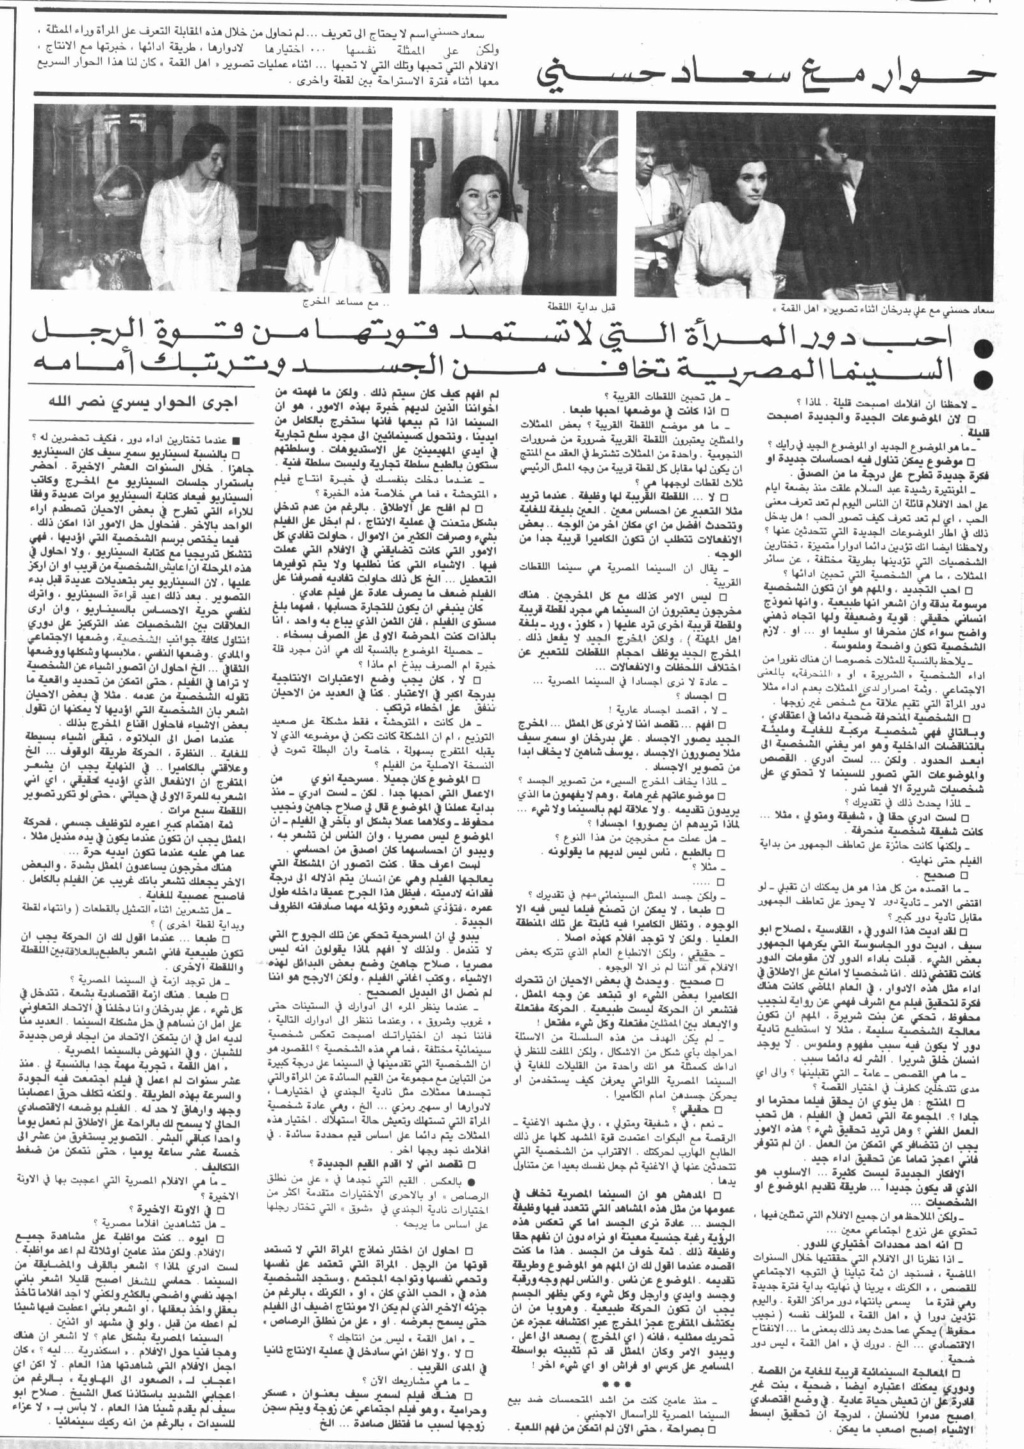 حوار صحفي : حوار مع سعاد حسني 1981 م Yi_a_c10